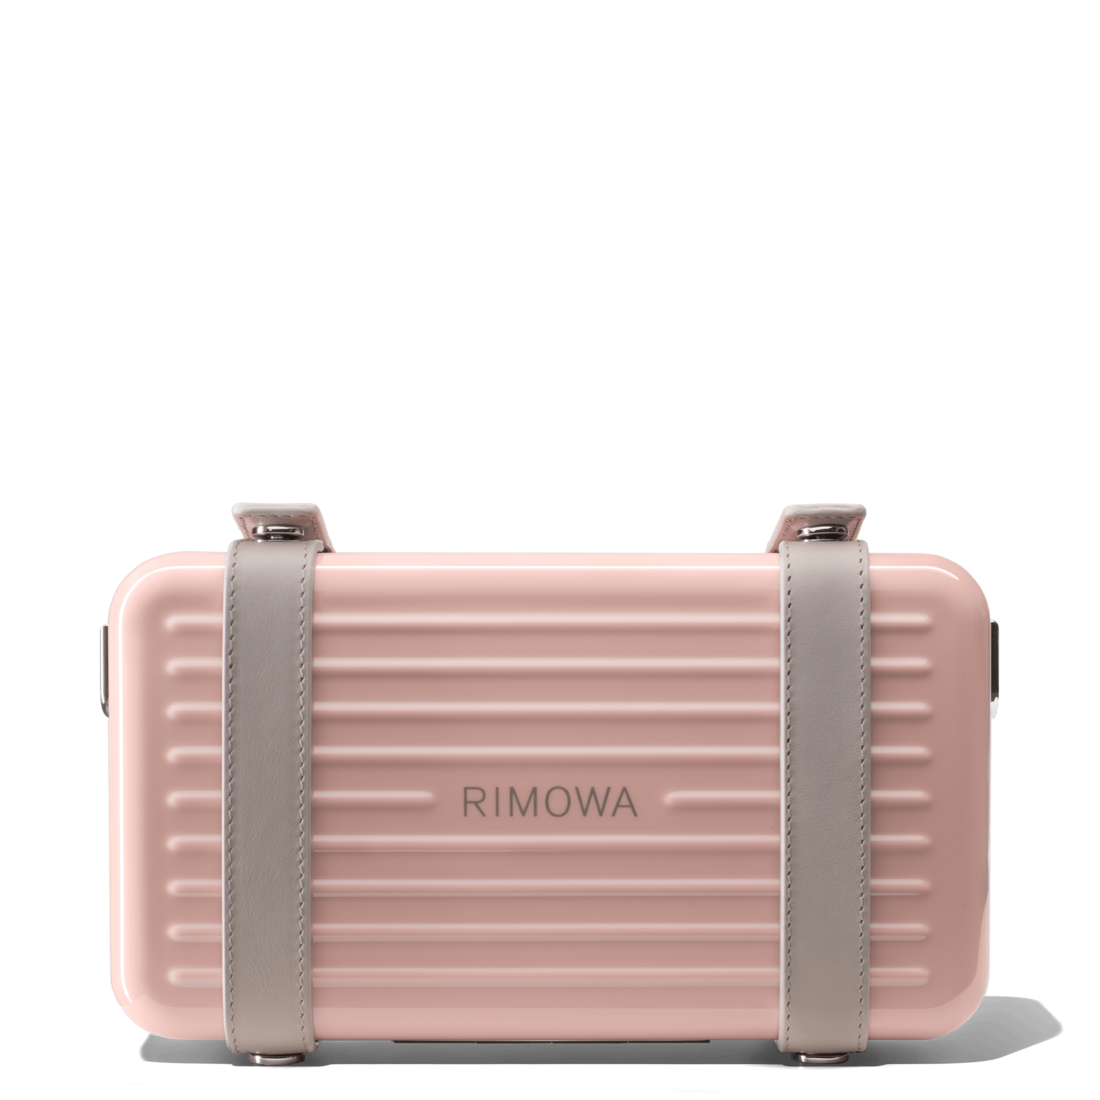 RIMOWARIMOWA Personal Polycarbonate Cross-Body Bag in Desert Rose Pink ...